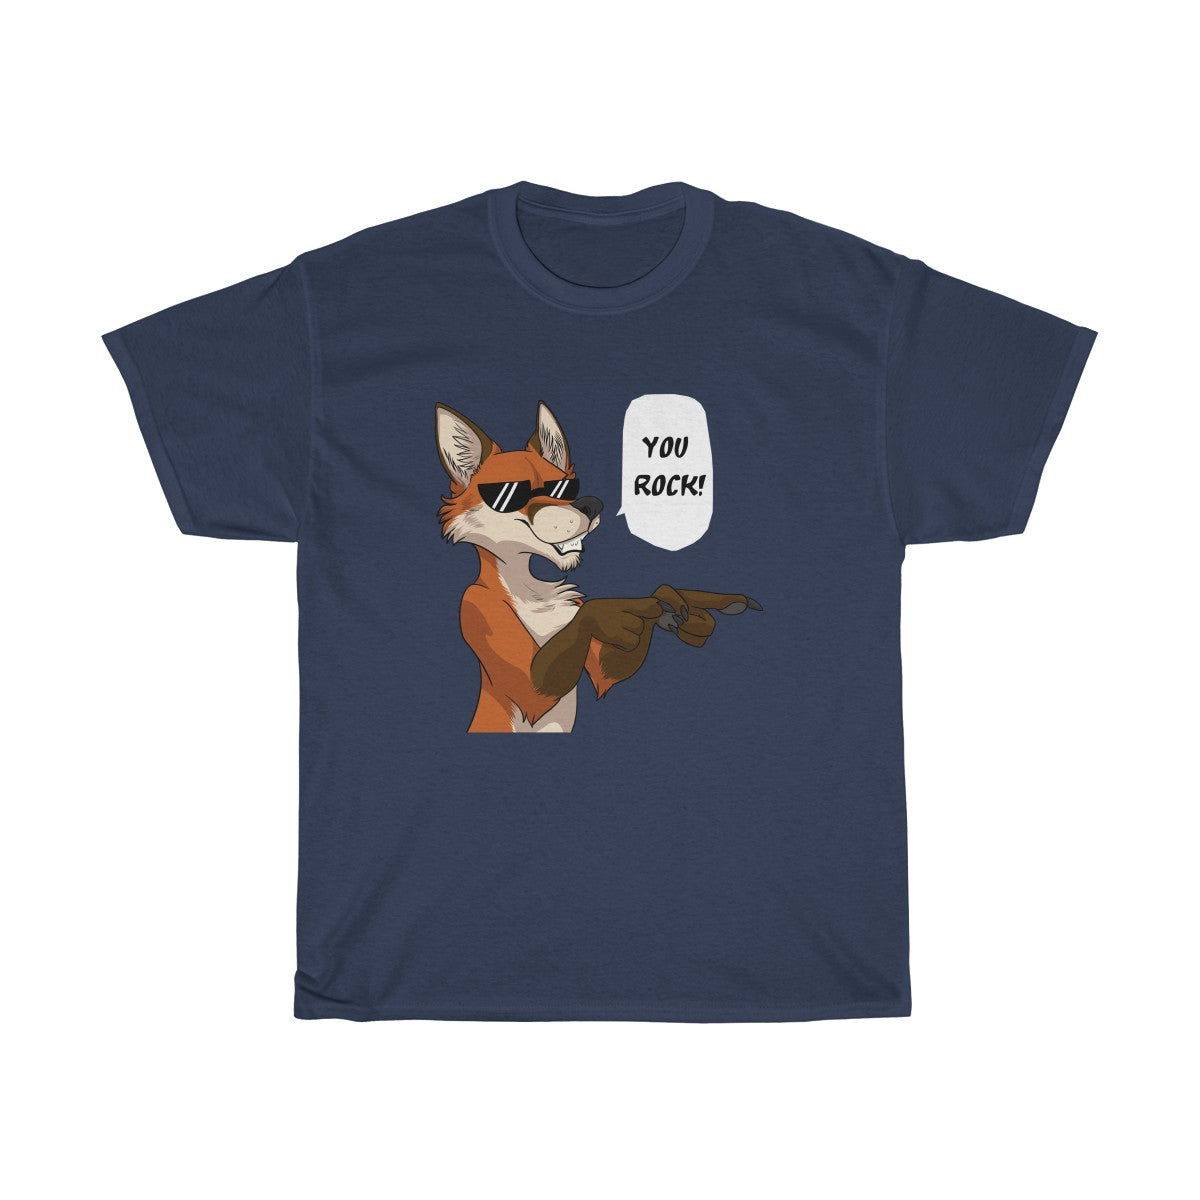 Fox - T-Shirt T-Shirt Dire Creatures Navy Blue S 